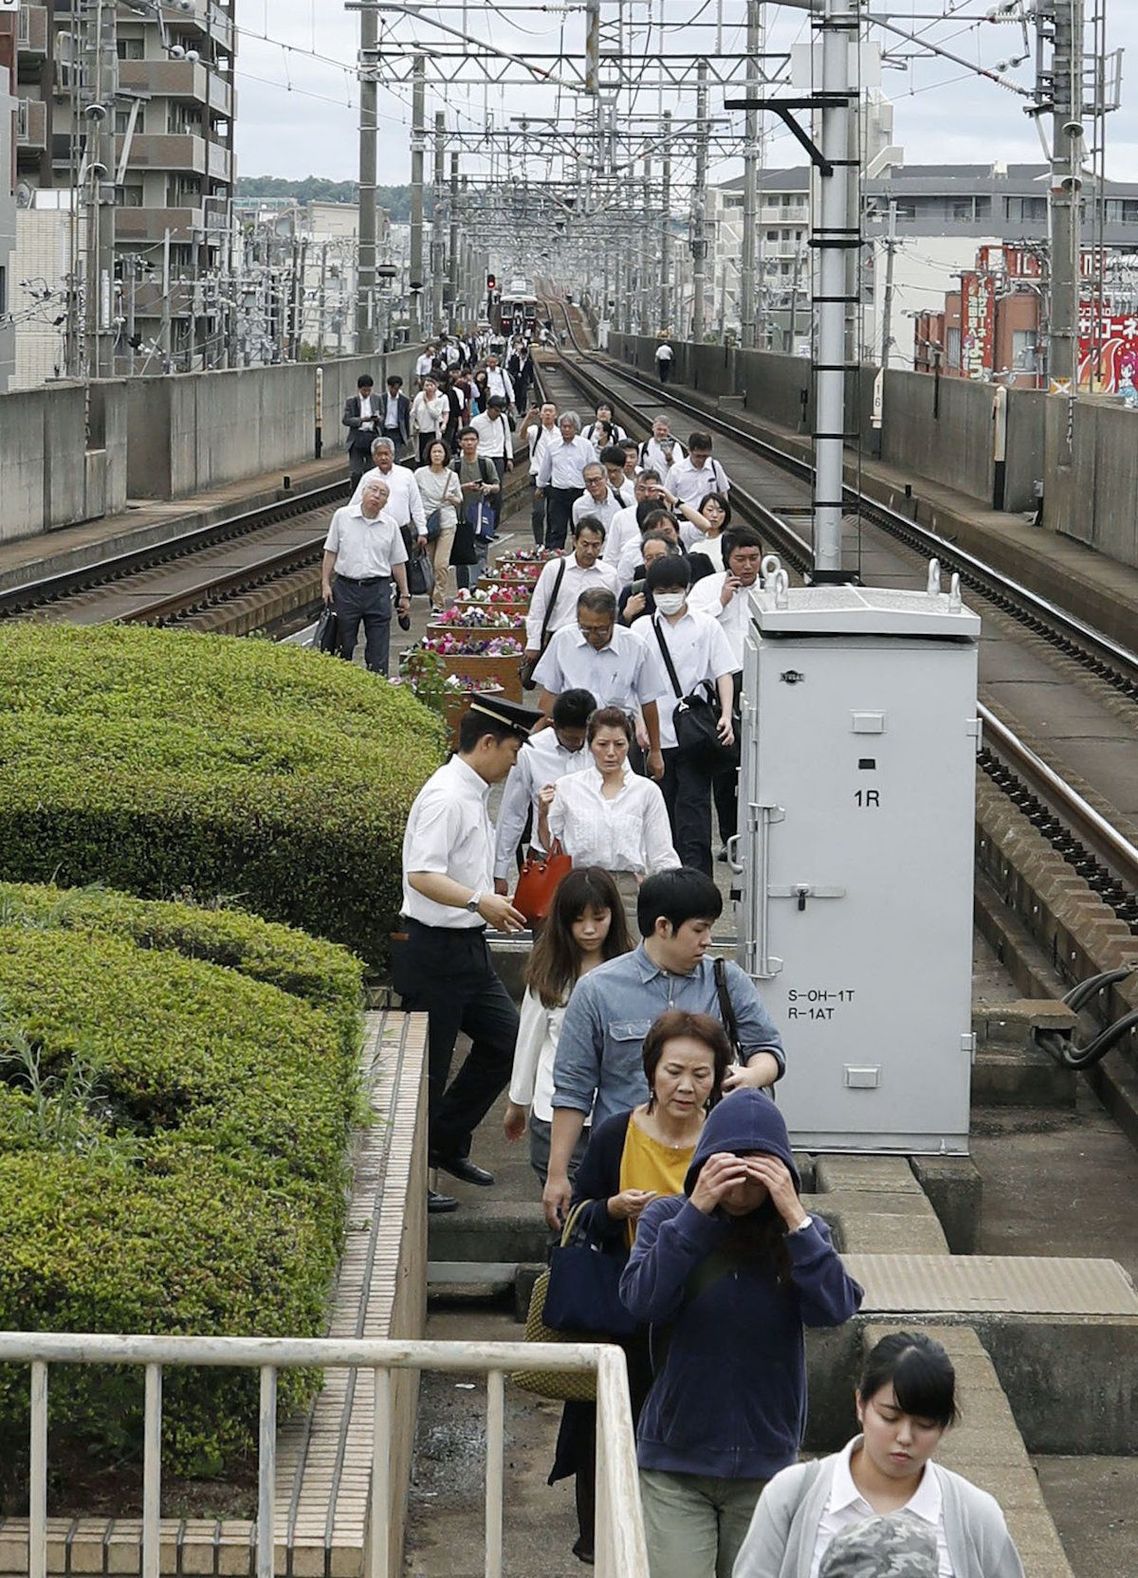 運行中止となった列車から降りて線路上を歩く人々